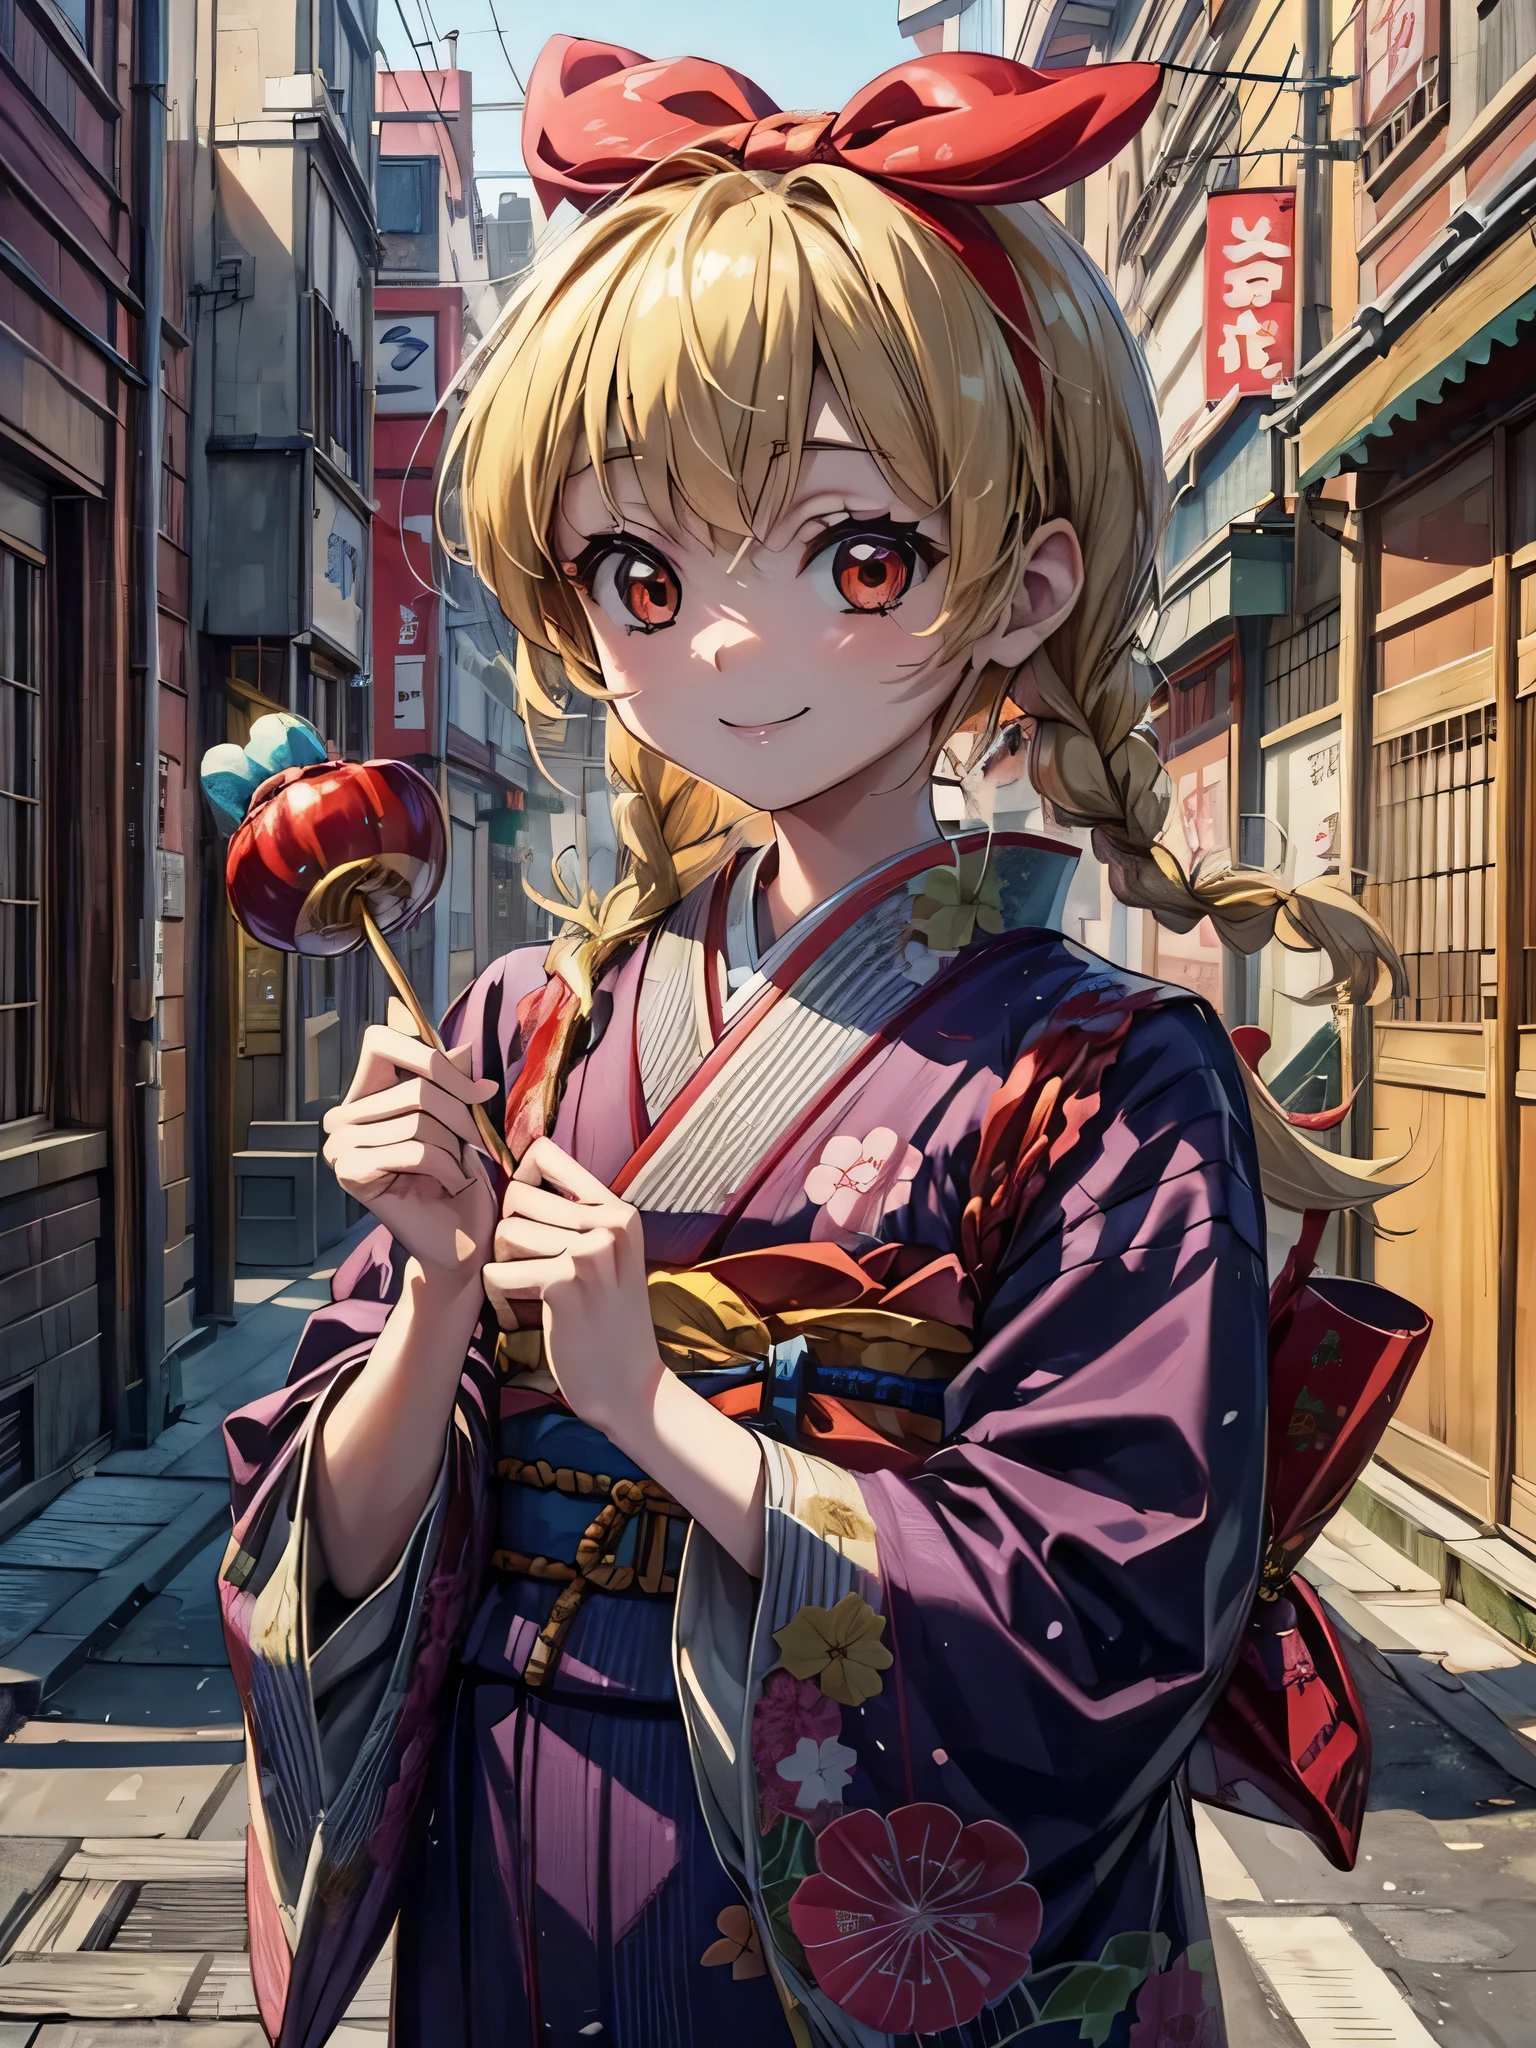 süßes japanisches Anime-Mädchen mit Bär und Zuckerstange, 1 Mädchen, Blondes Haar, japanische kleidung, twin flechtens, Kimono, Essen, lächeln, Maske, flechten, Maske on head, Allein, kandierter Apfel